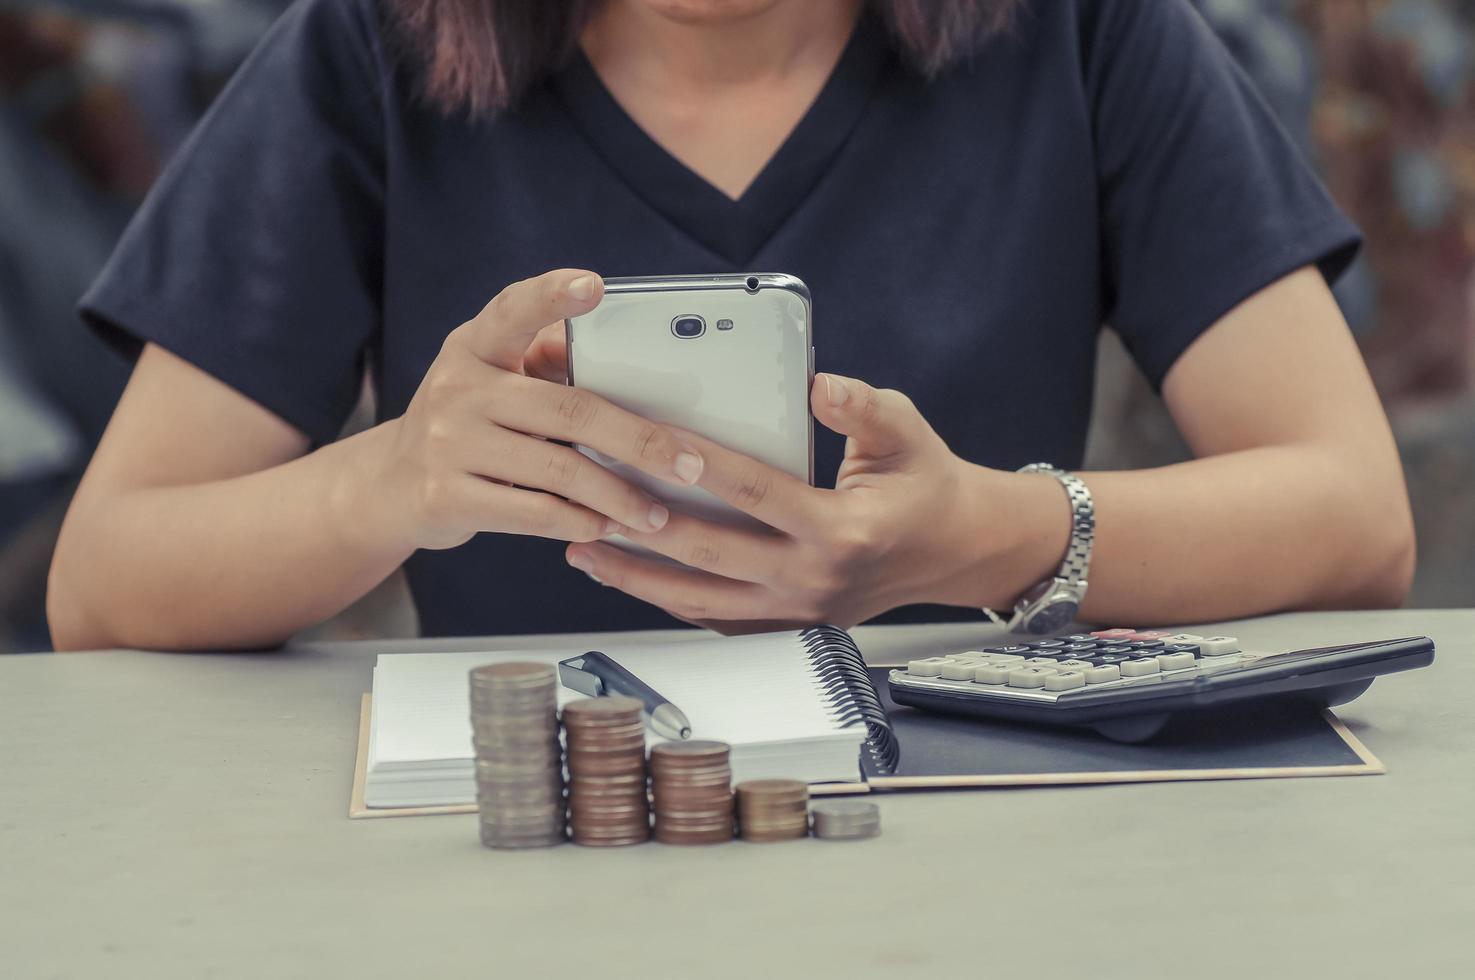 vrouwen gebruiken telefoon met boek, rekenmachine en munten op tafel foto